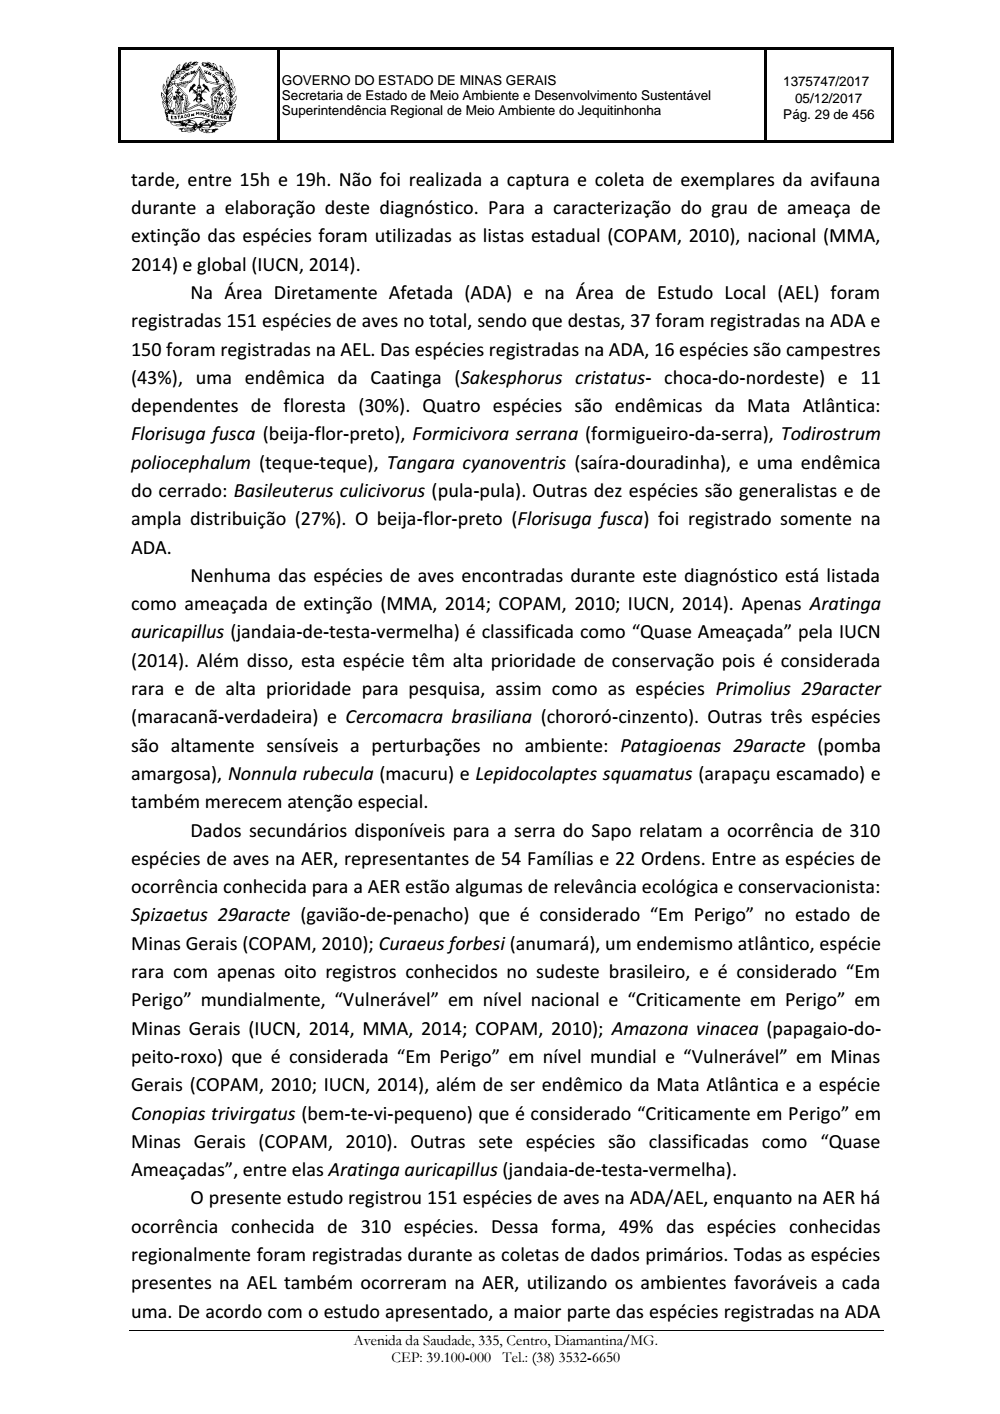 Page 29 from Parecer único da Secretaria de estado de Meio Ambiente e Desenvolvimento Sustentável (SEMAD)